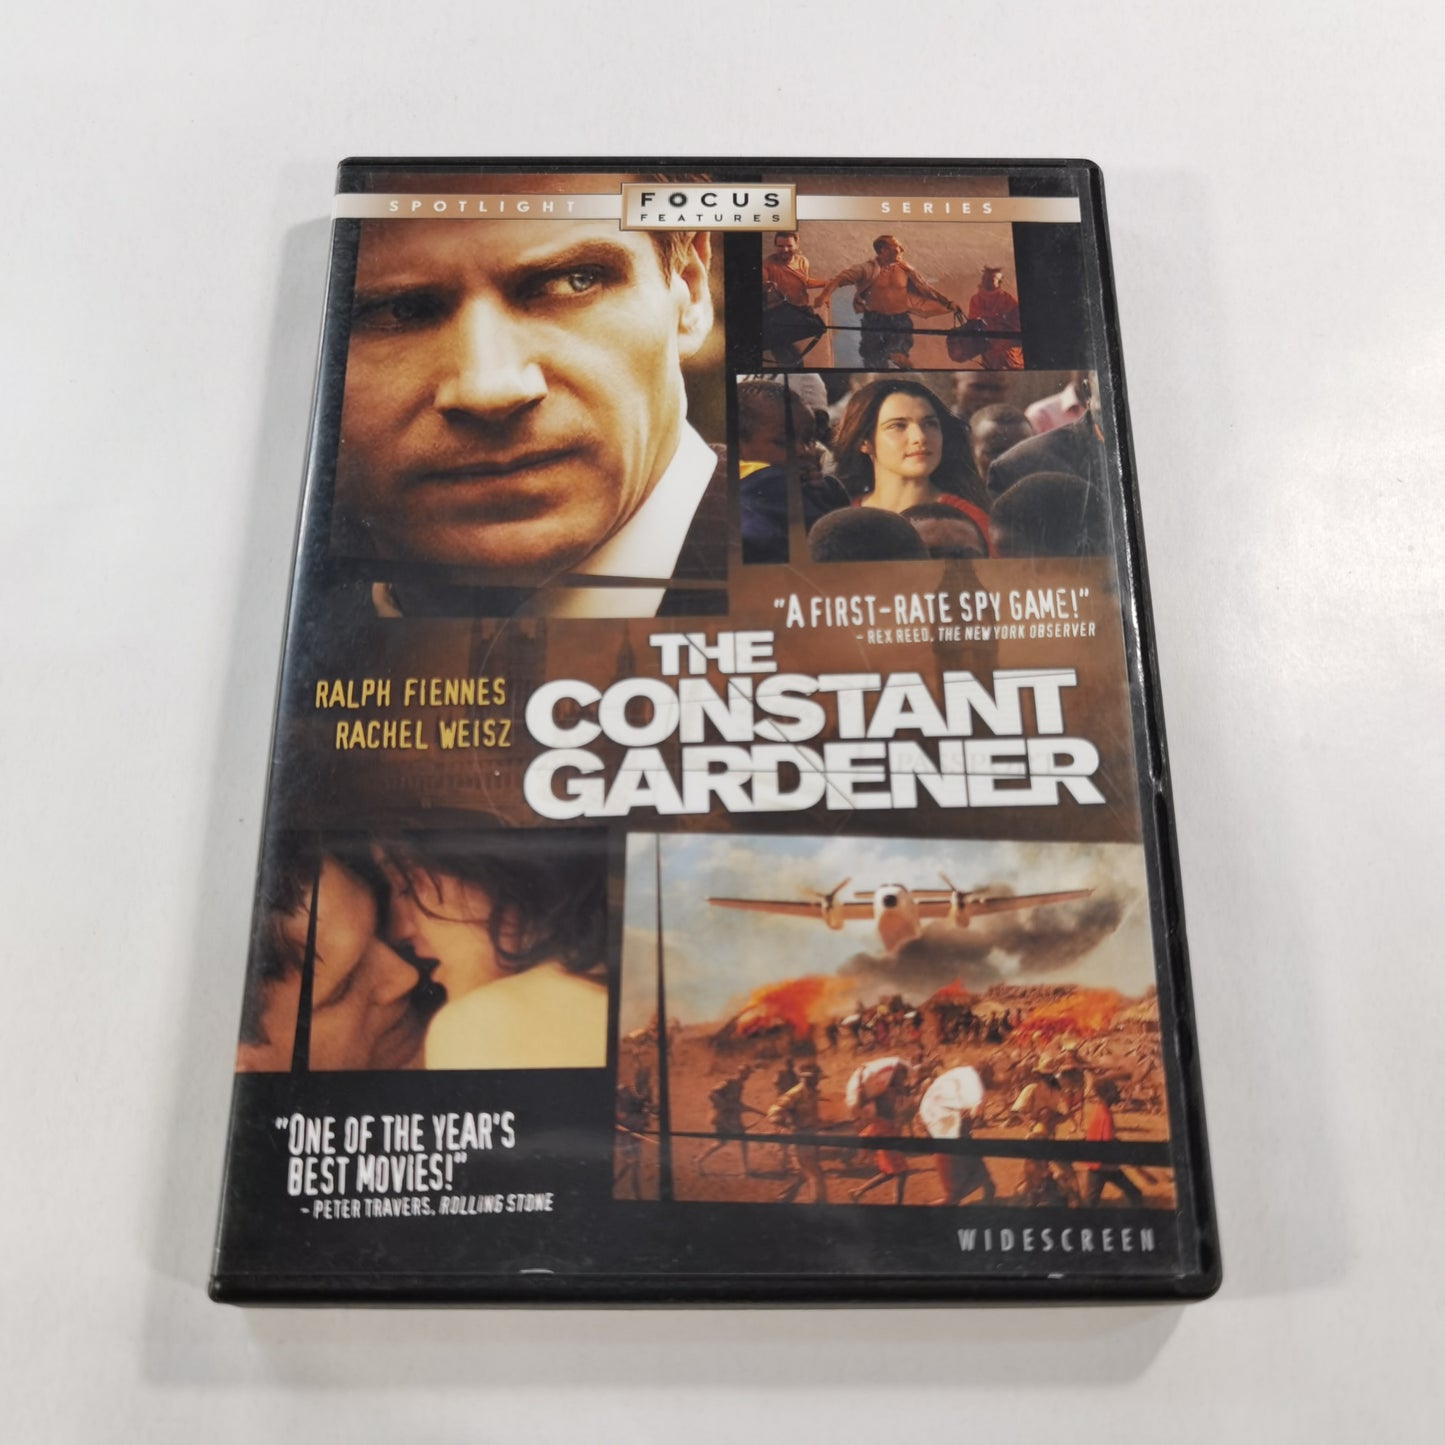 The Constant Gardener (2005) - DVD US 2006